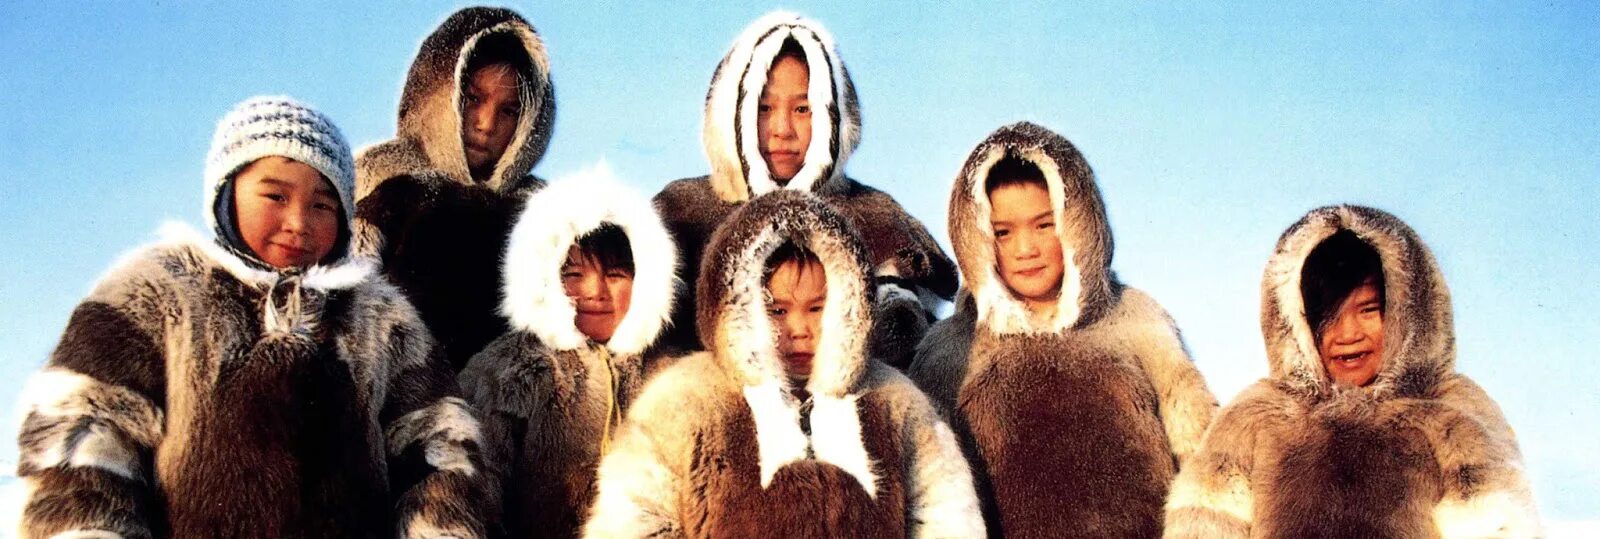 Куртка эскимоса 6. Эскимосы Канады. Эскимосы Чукотки. Эскимосы народы Арктики.